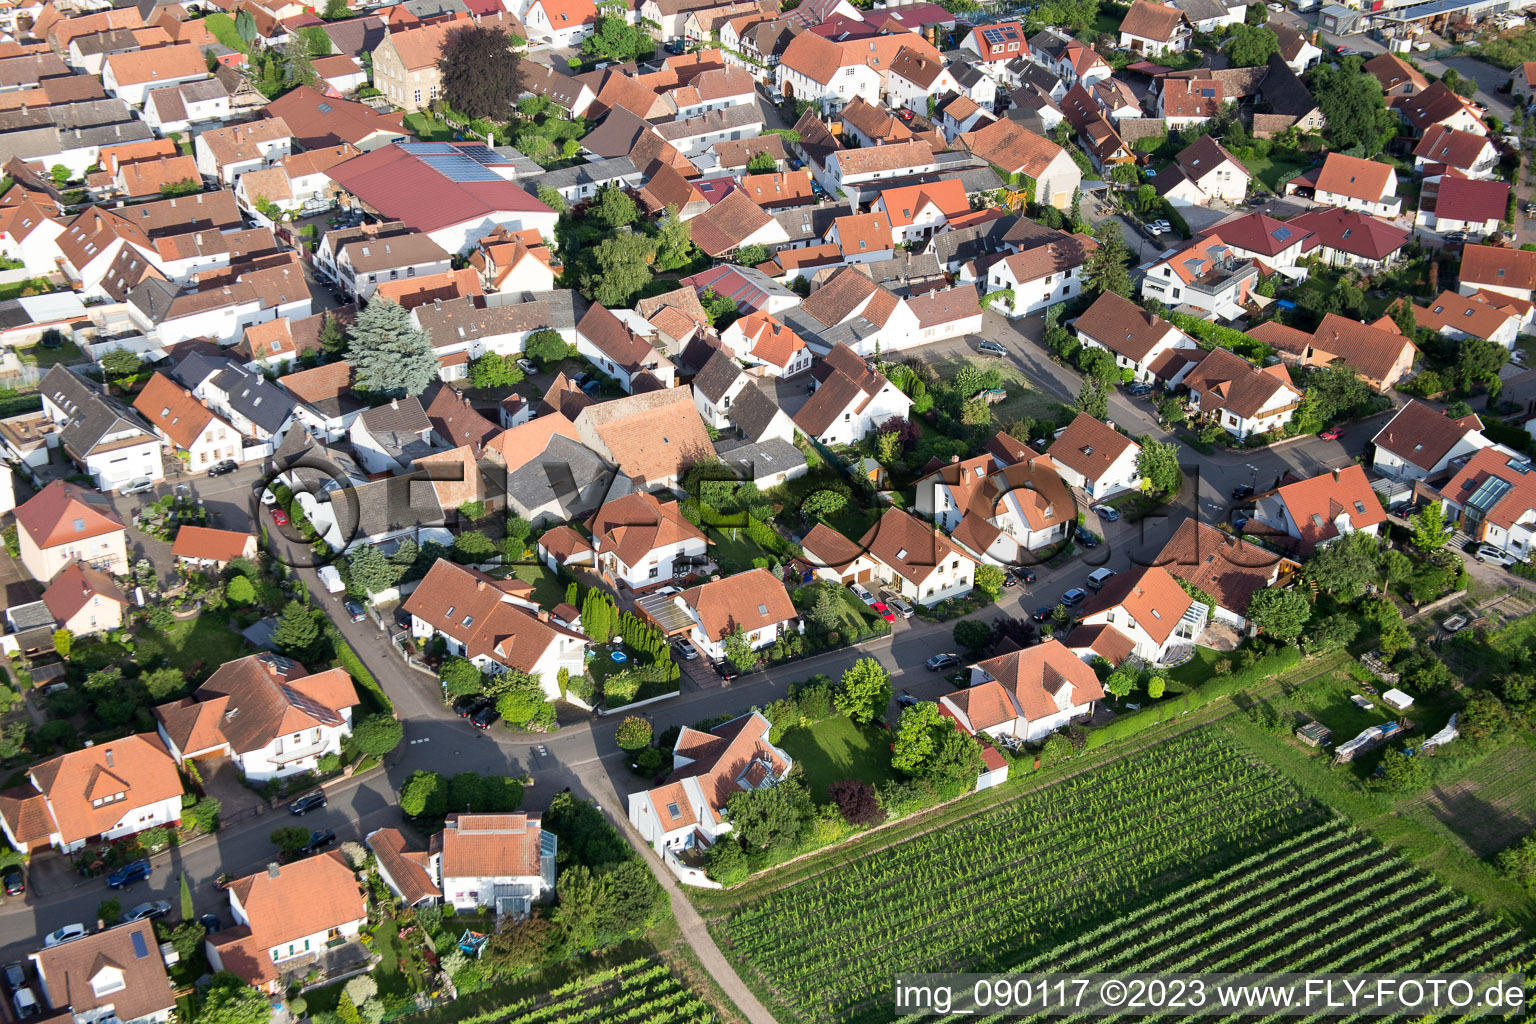 Venningen im Bundesland Rheinland-Pfalz, Deutschland von der Drohne aus gesehen